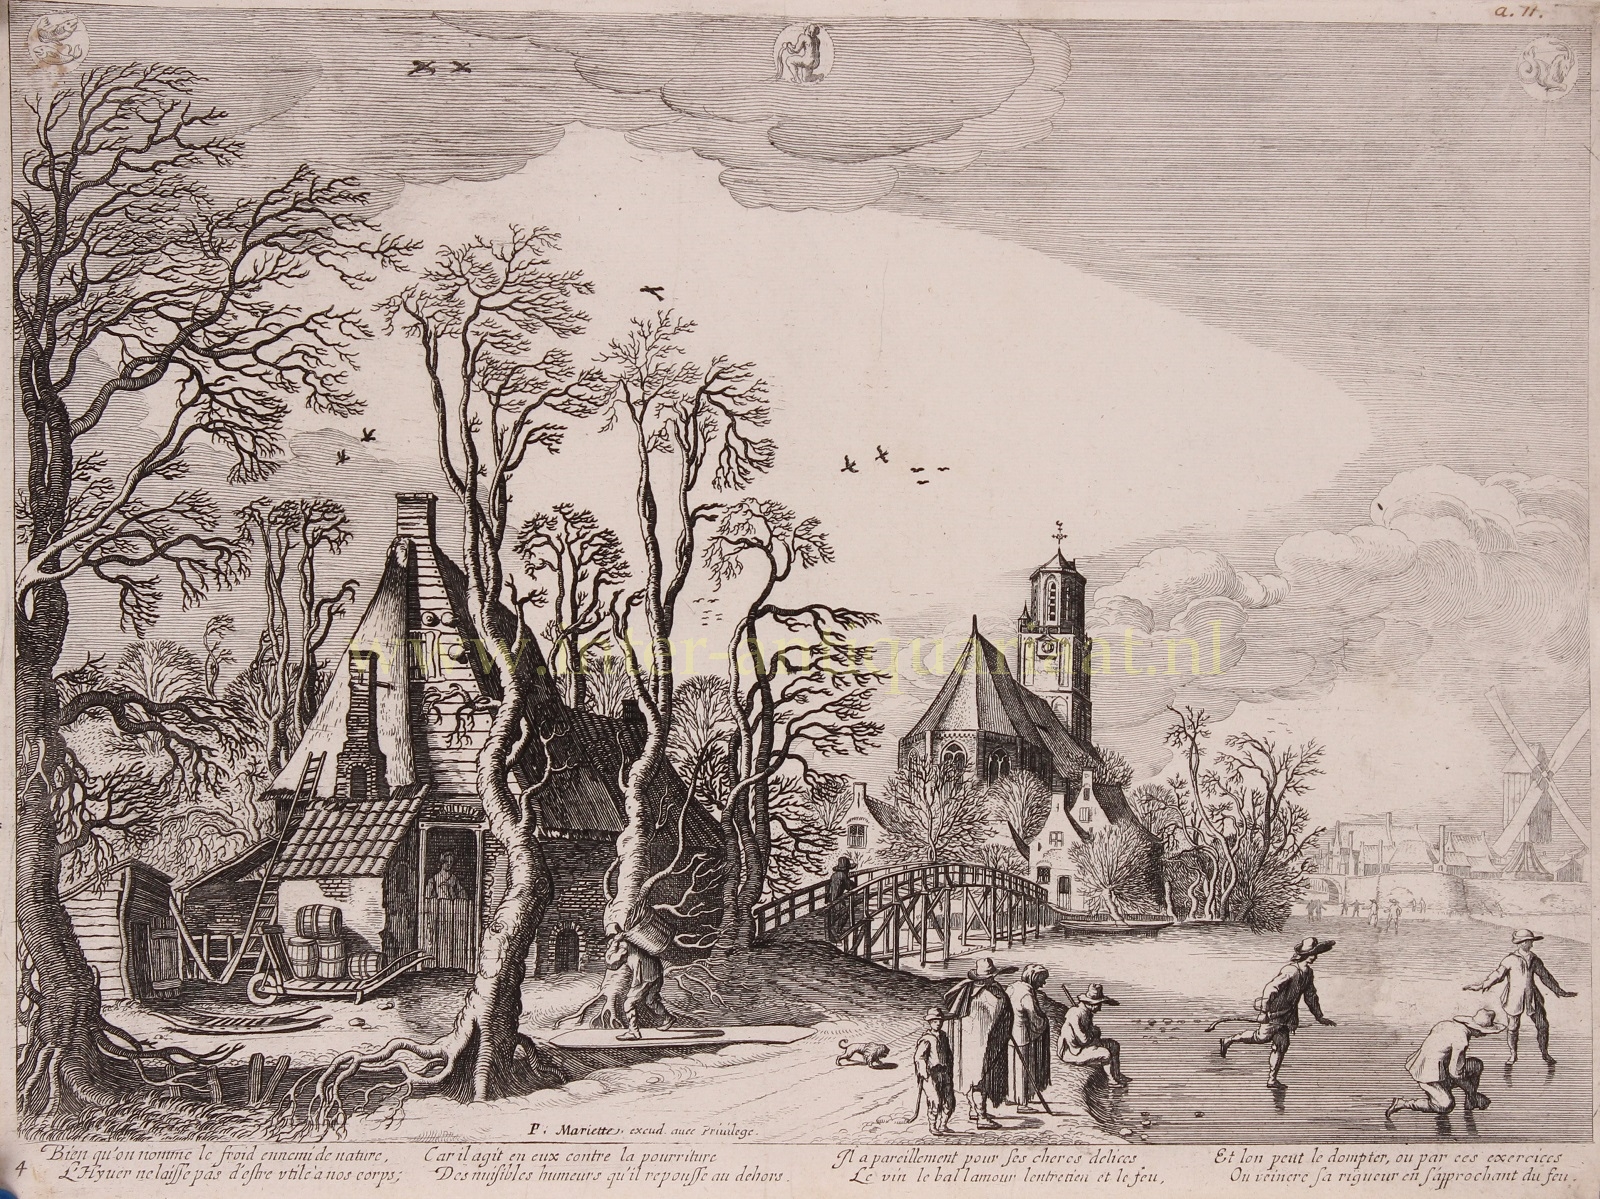  - Winterlandschap - Pierre Mariette, ca. 1650